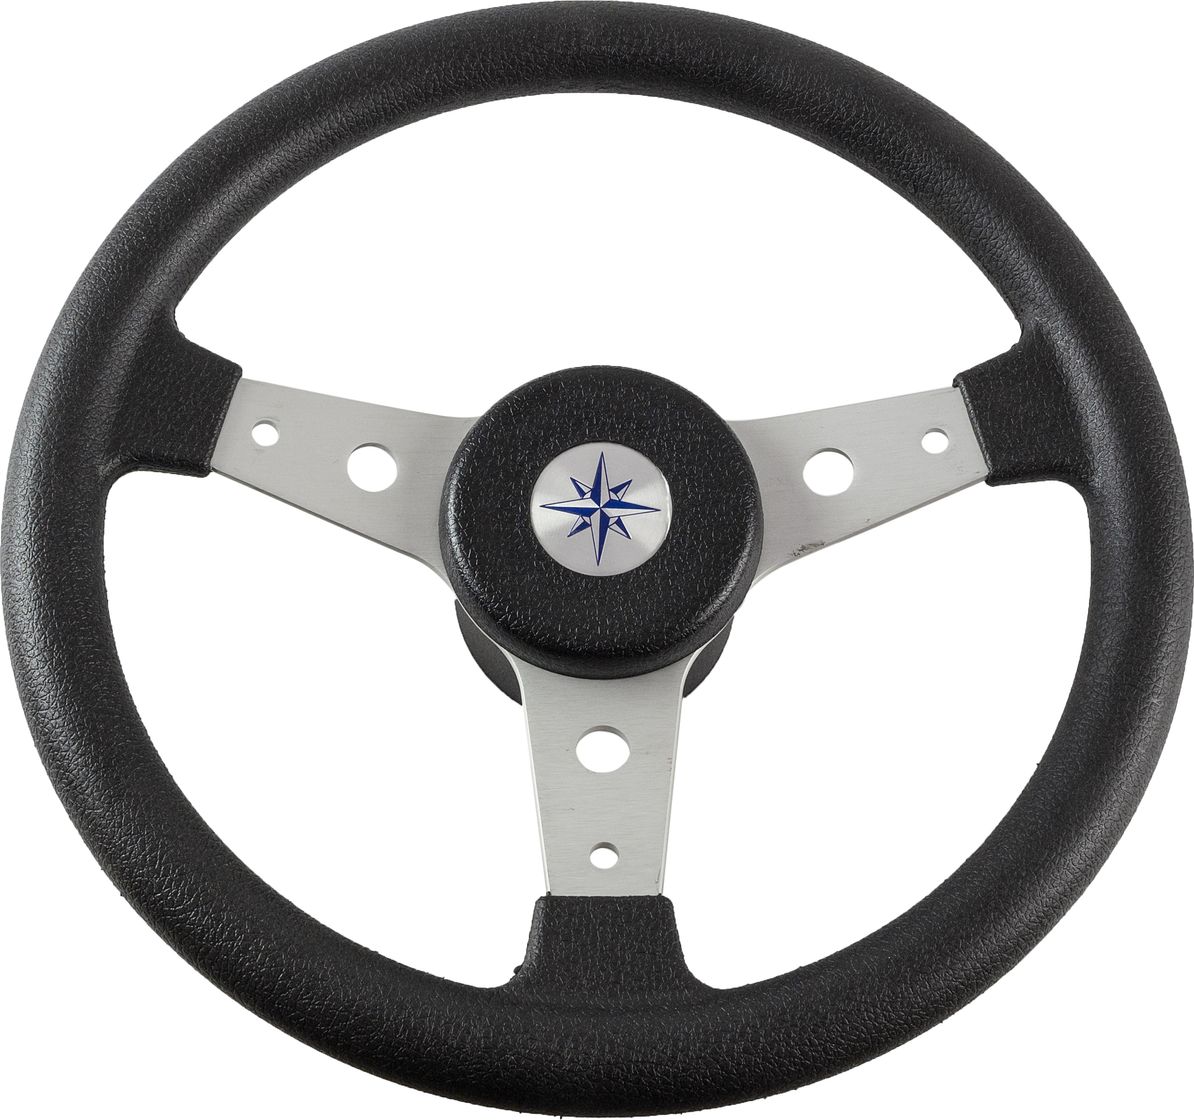 Рулевое колесо DELFINO обод черный, спицы серебряные д. 340 мм VN70401-01 рулевое колесо versilia more 10016456